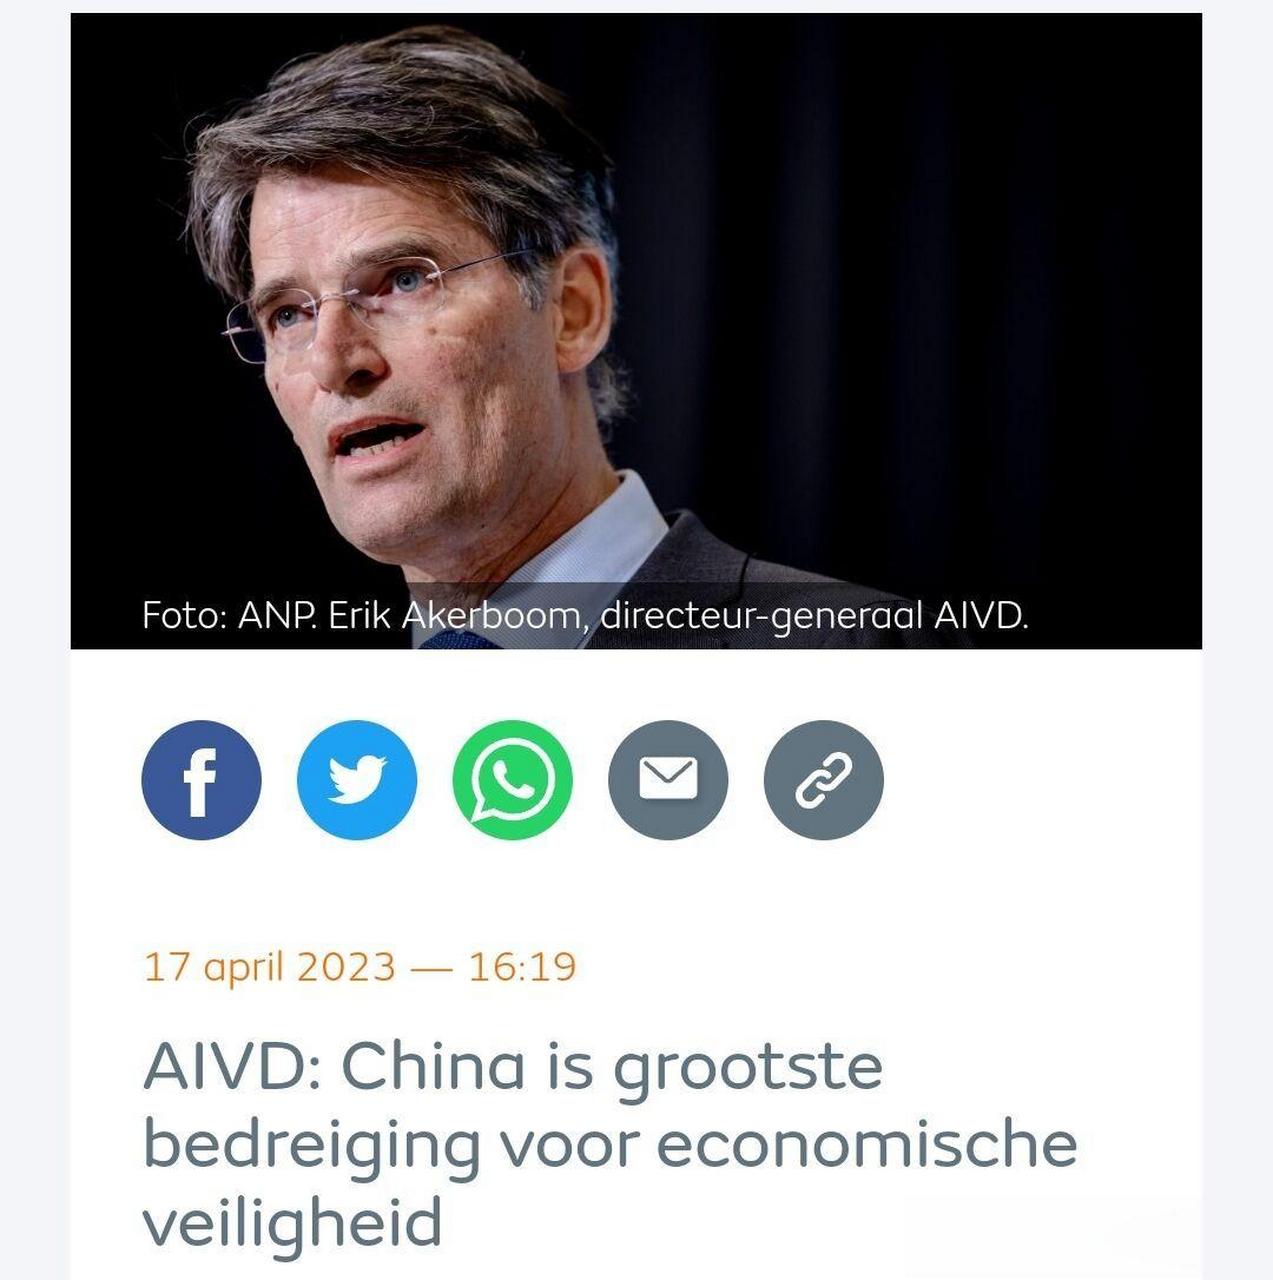 荷兰情报机构:中国是经济安全最大威胁,隐瞒军民一条心角色